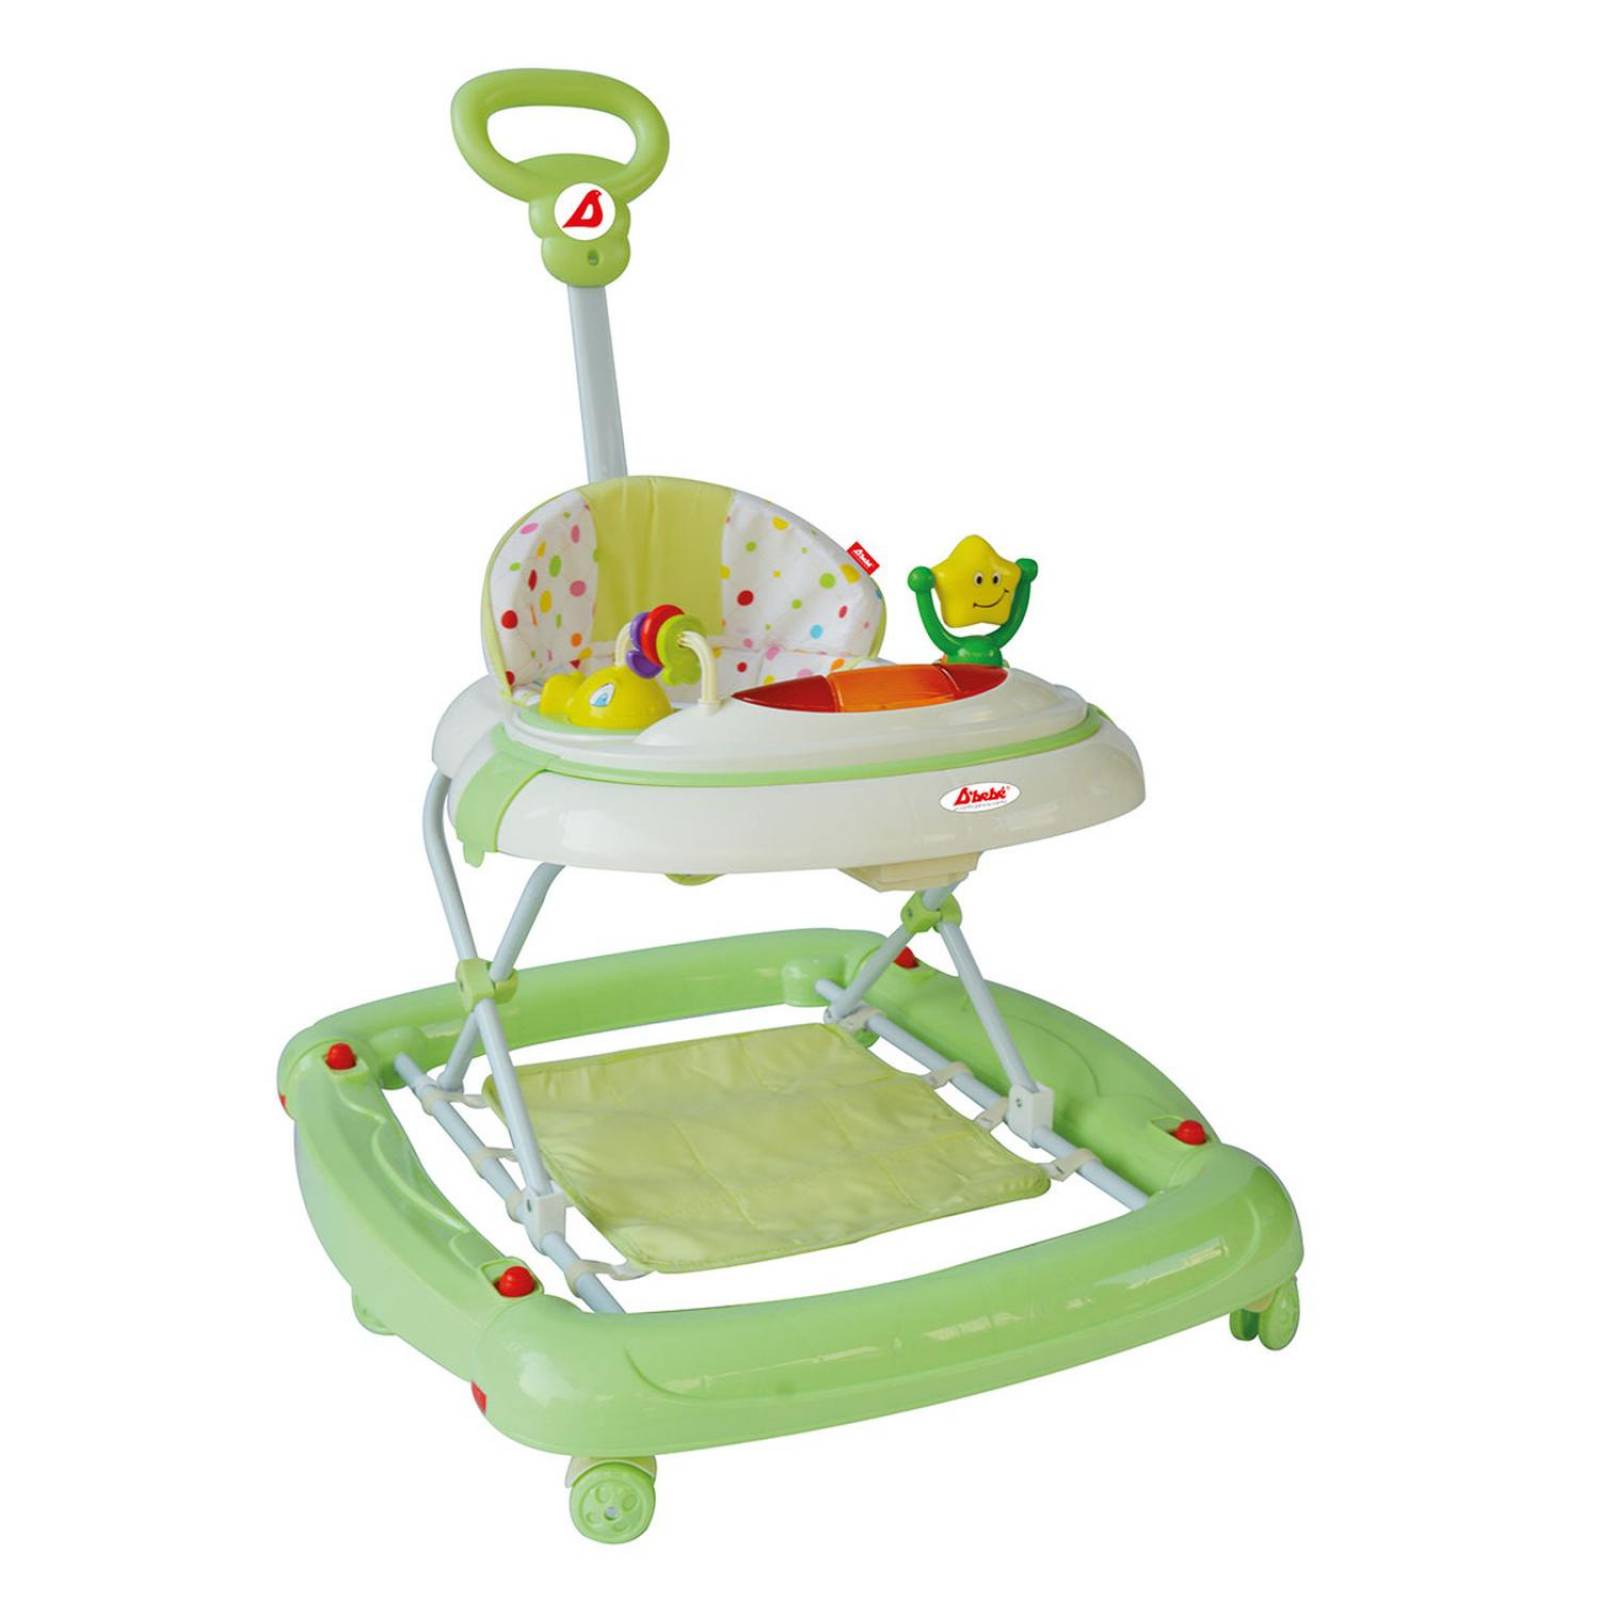 Andadera Play Verde - D'bebé : Productos para bebé